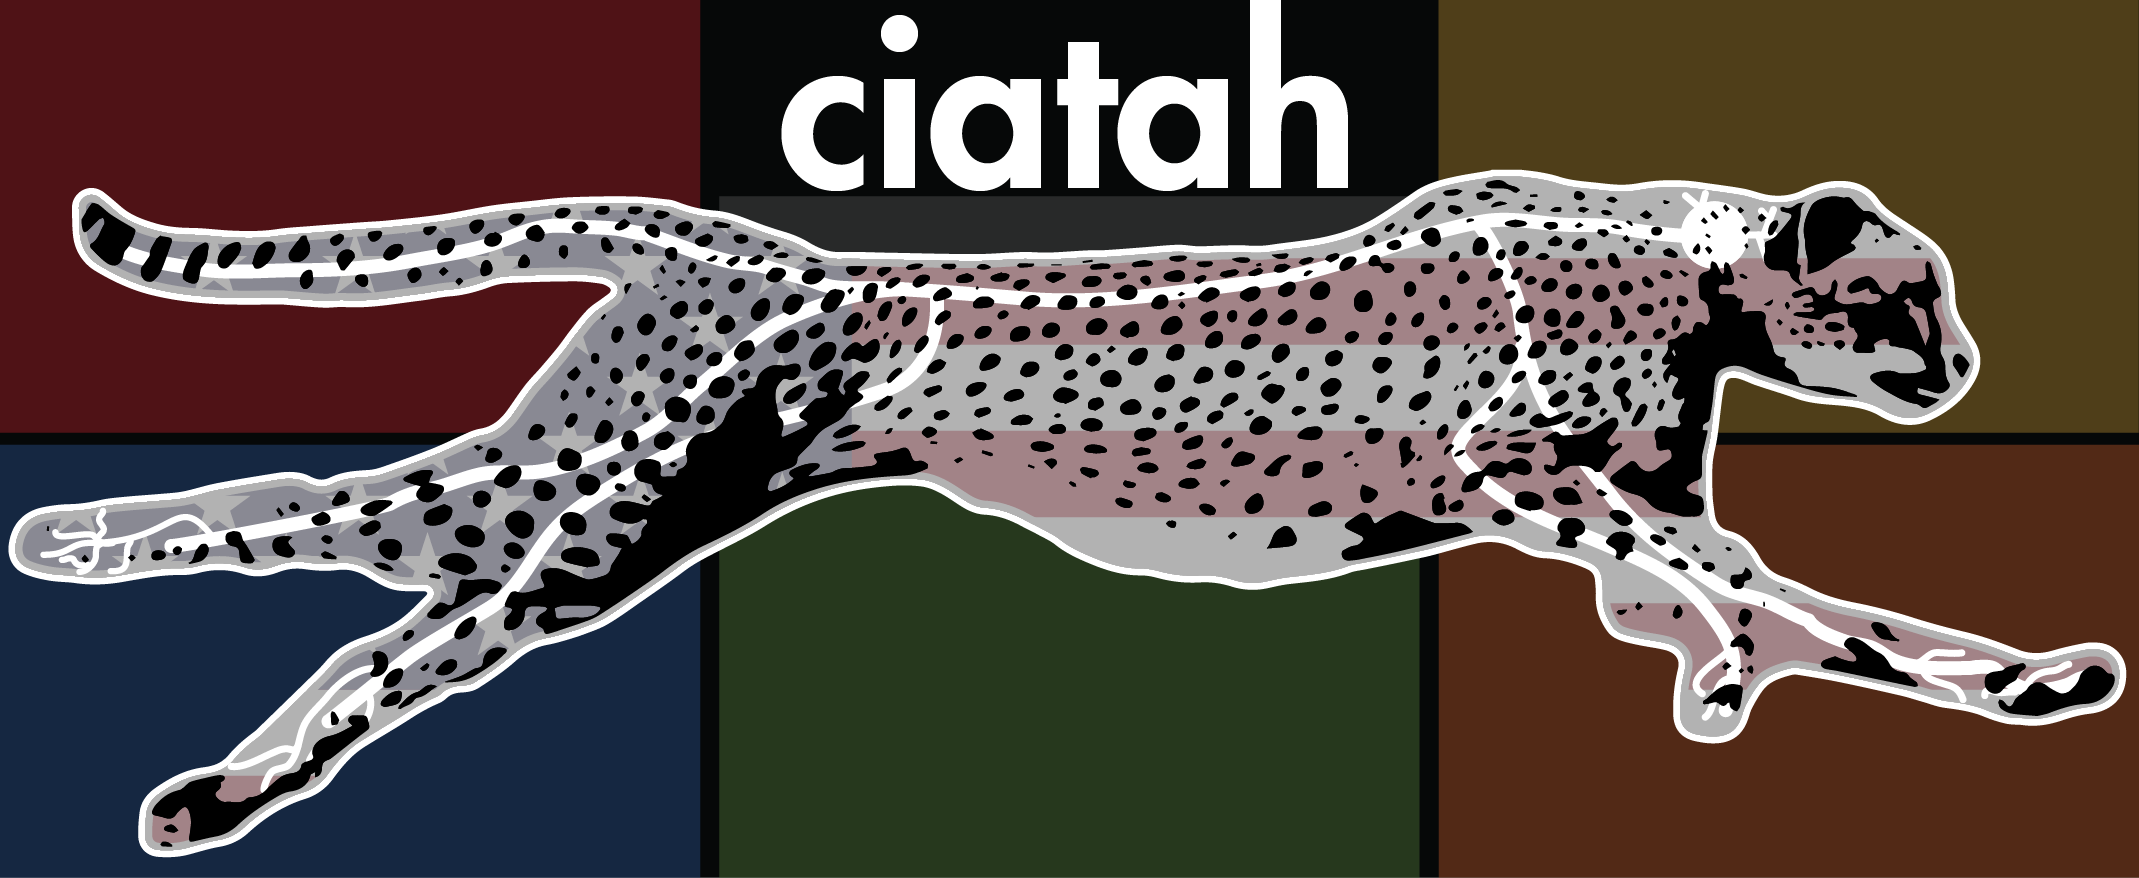 ../_images/ciatah_logo.png